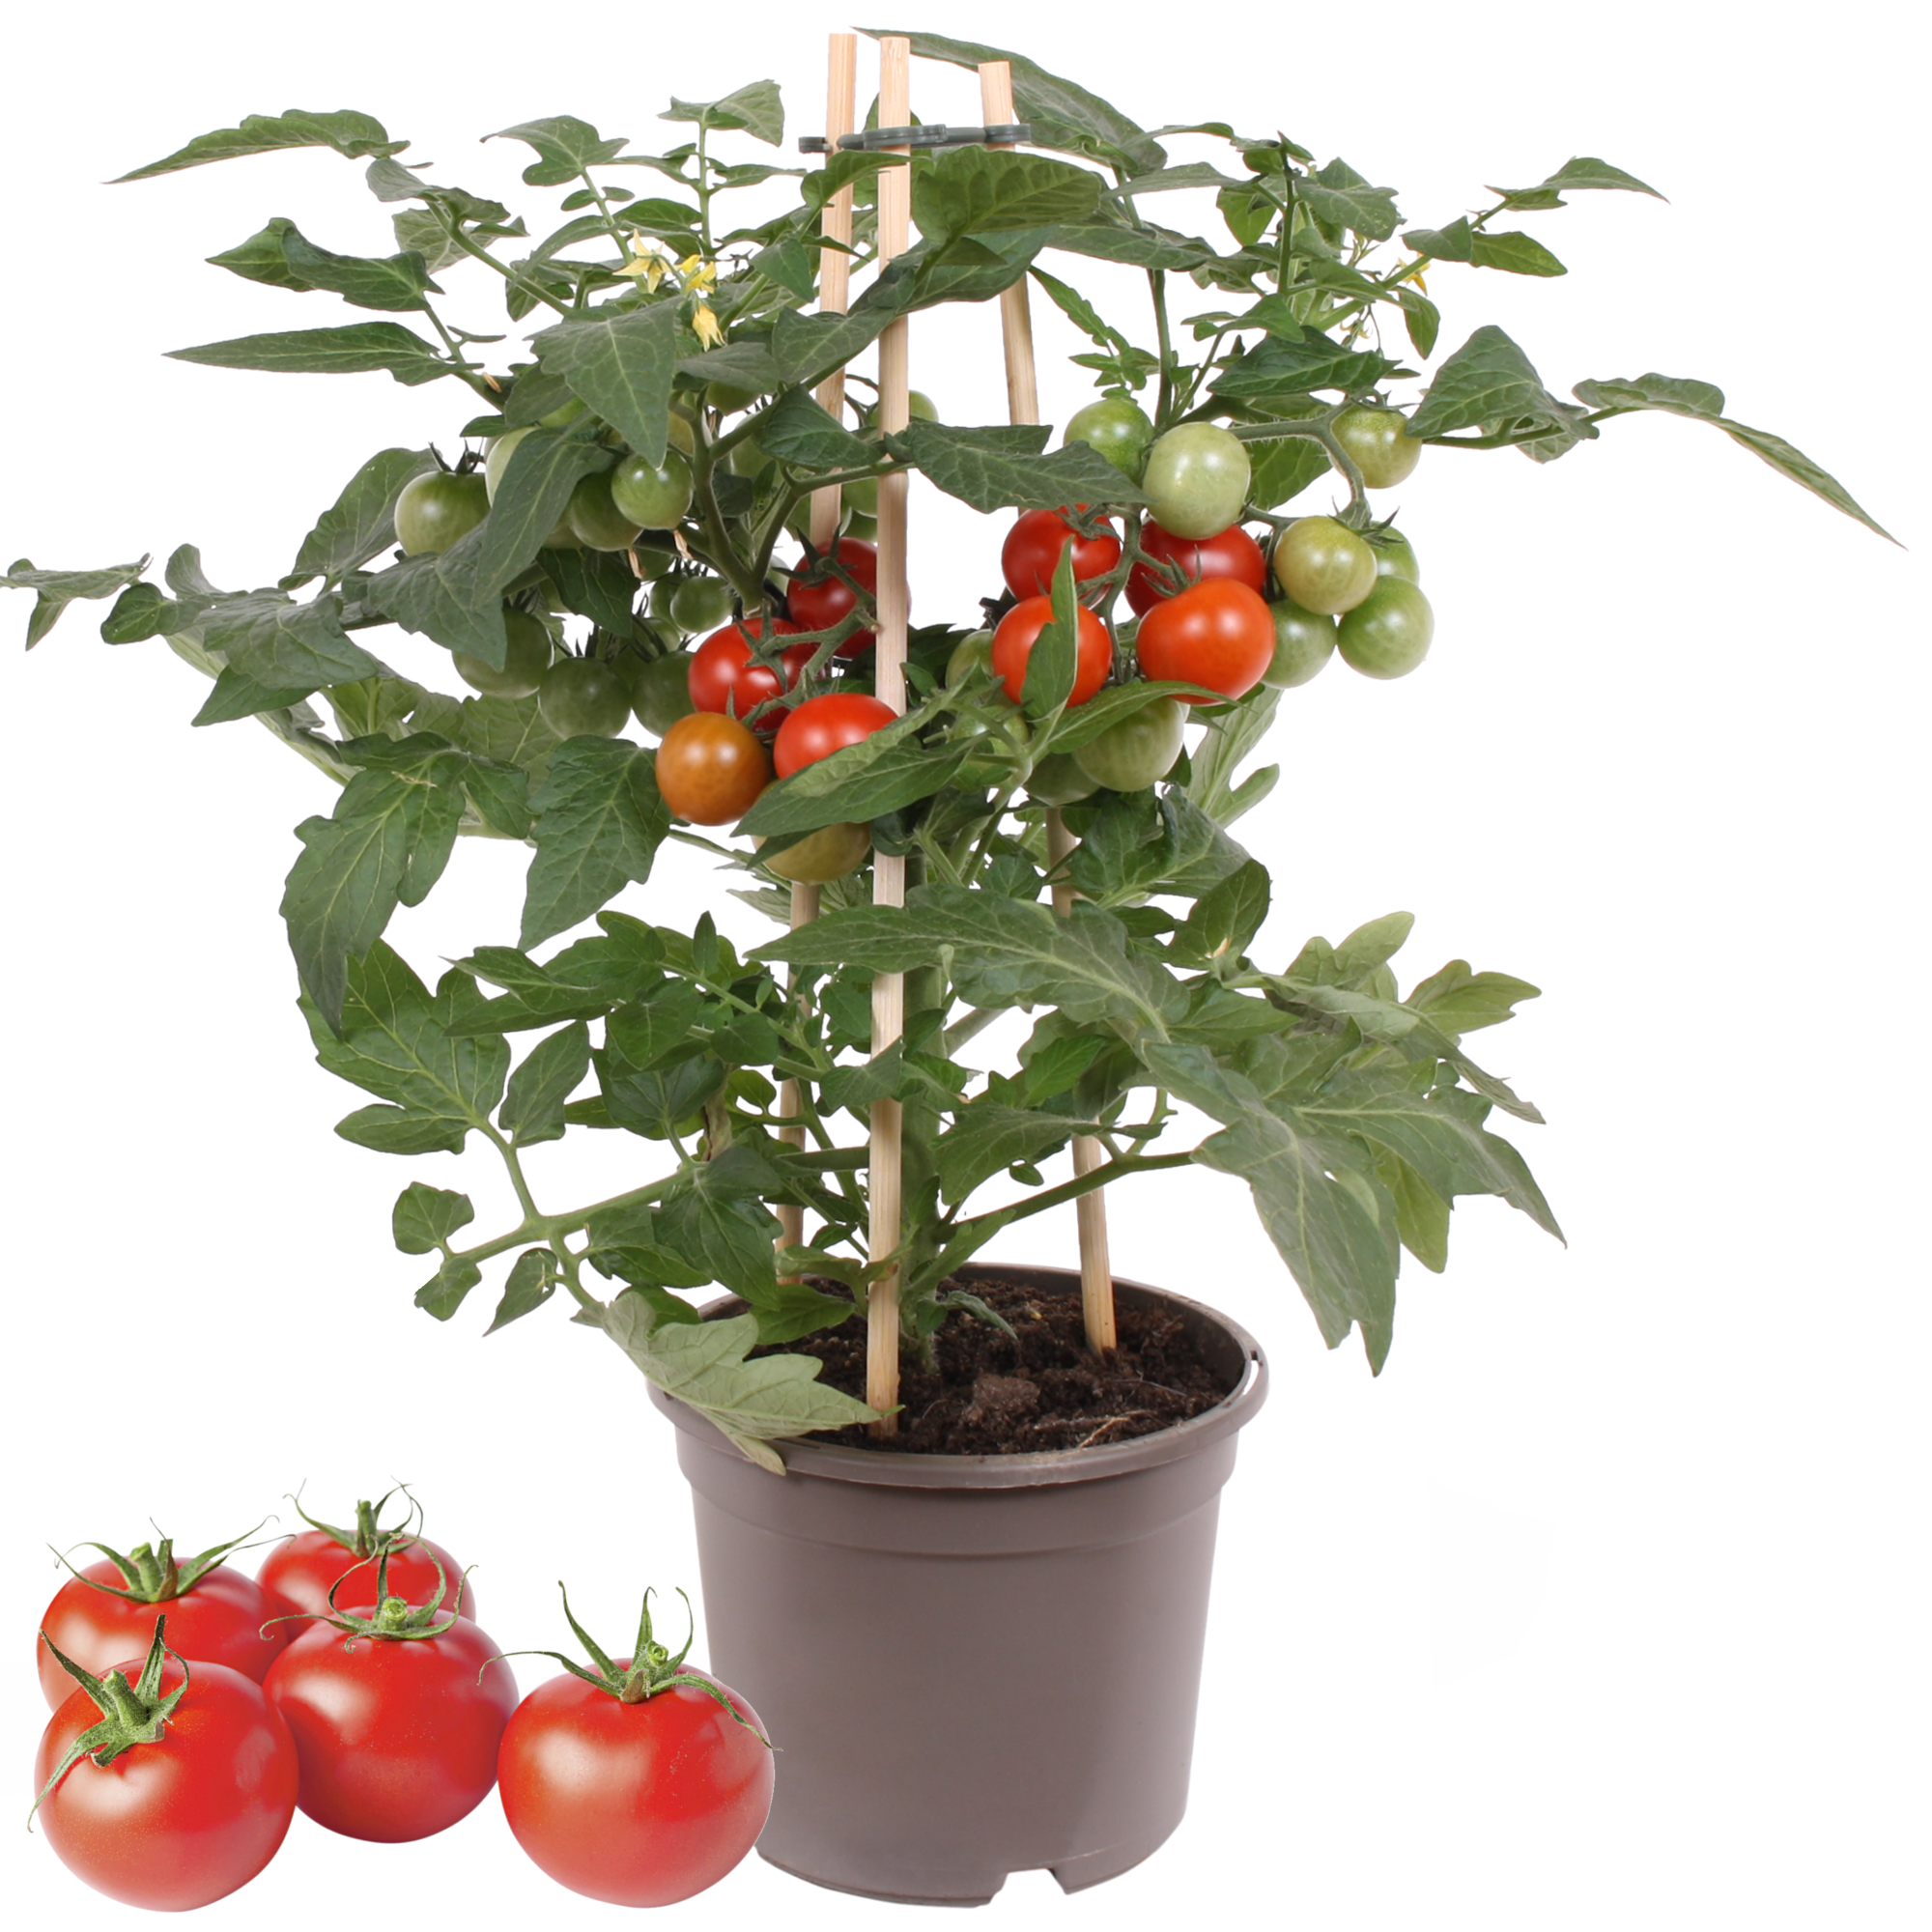 Cherrytomate mit Früchten, rot, 14 cm Topf + product picture